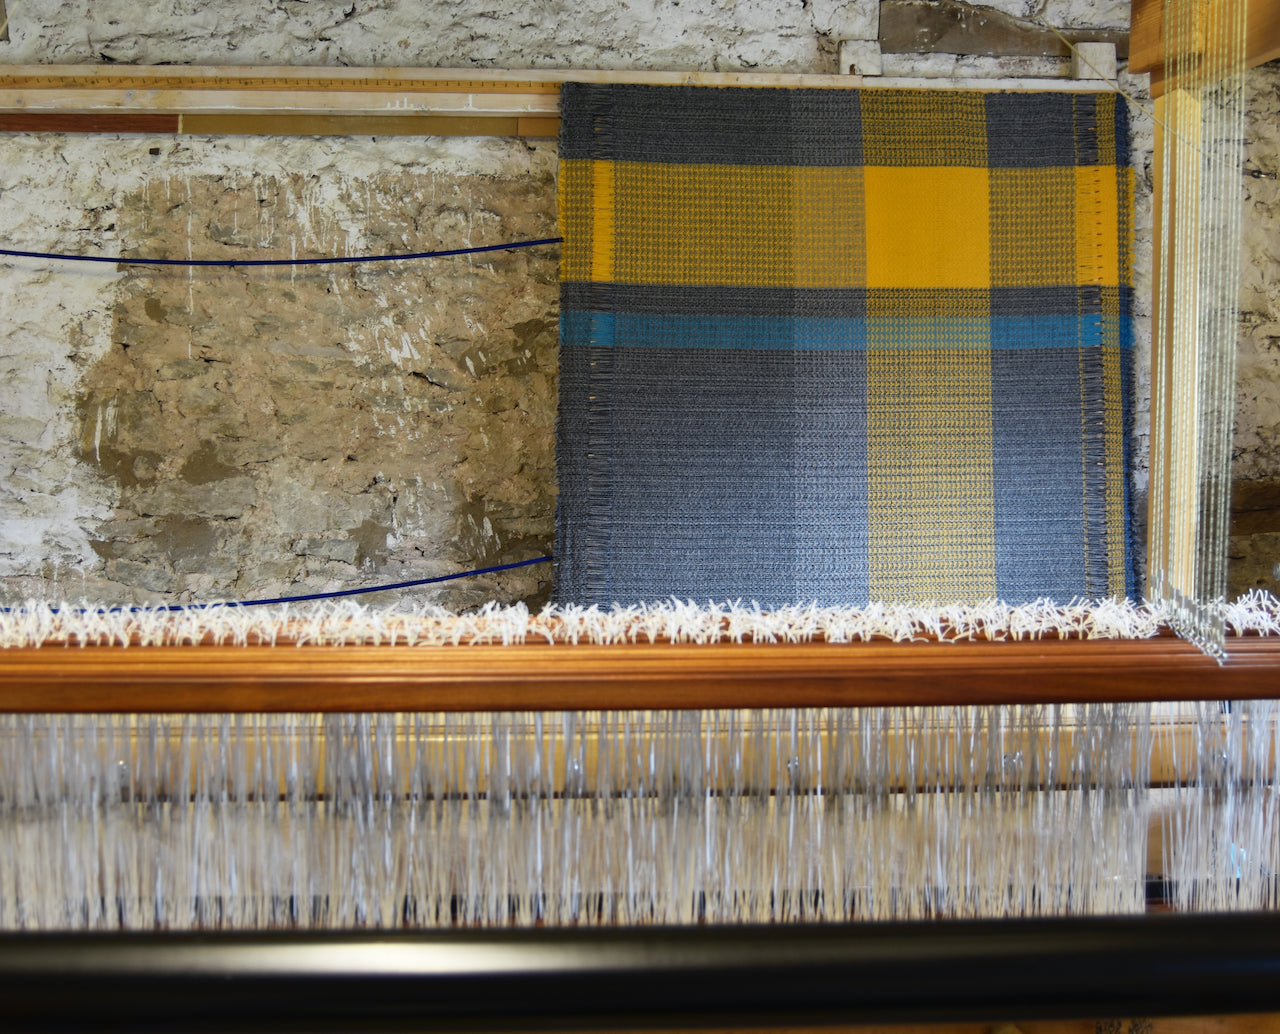 a Rhian Wyman woollen throw in grey, ochre and blue on a loom.